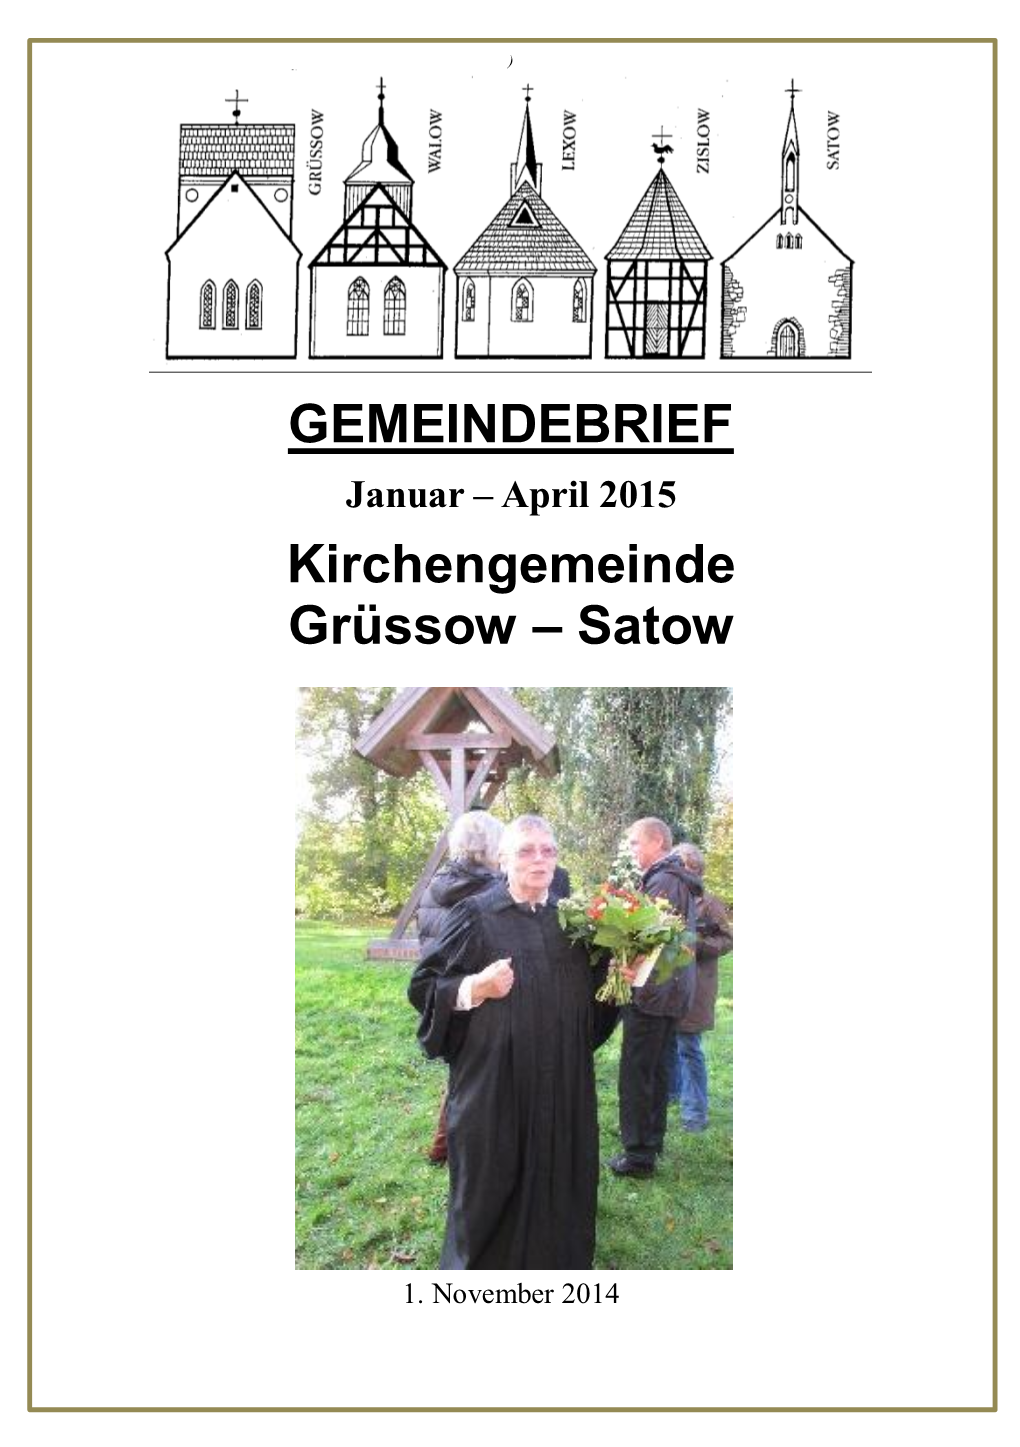 GEMEINDEBRIEF Kirchengemeinde Grüssow – Satow